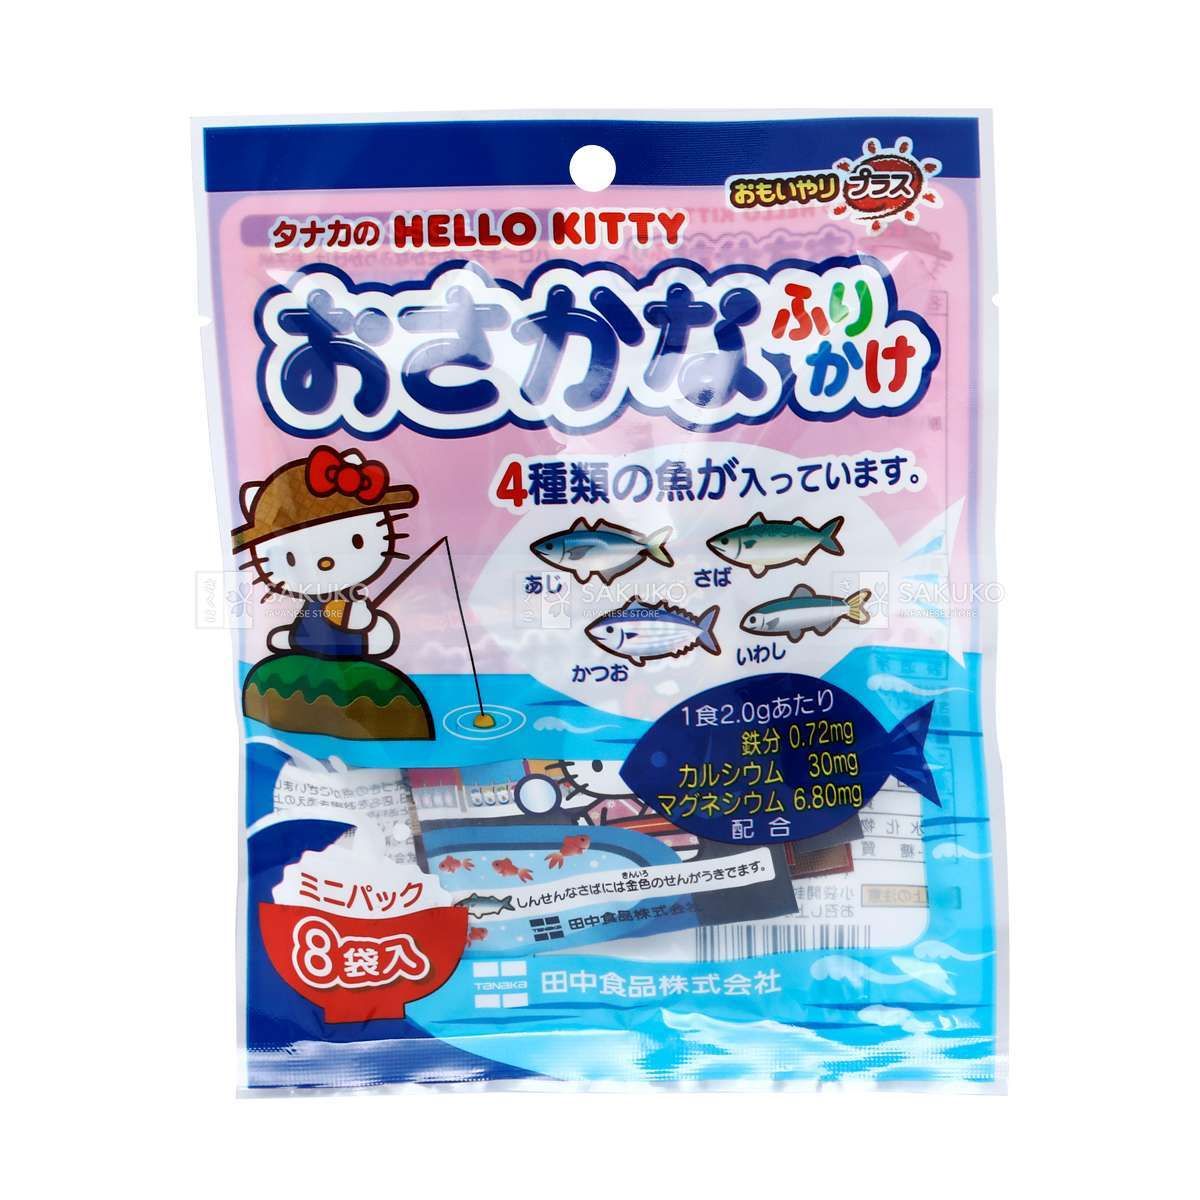  TANAKA FOODS- Rắc cơm vị cá HELLO KITTY 8 gói 